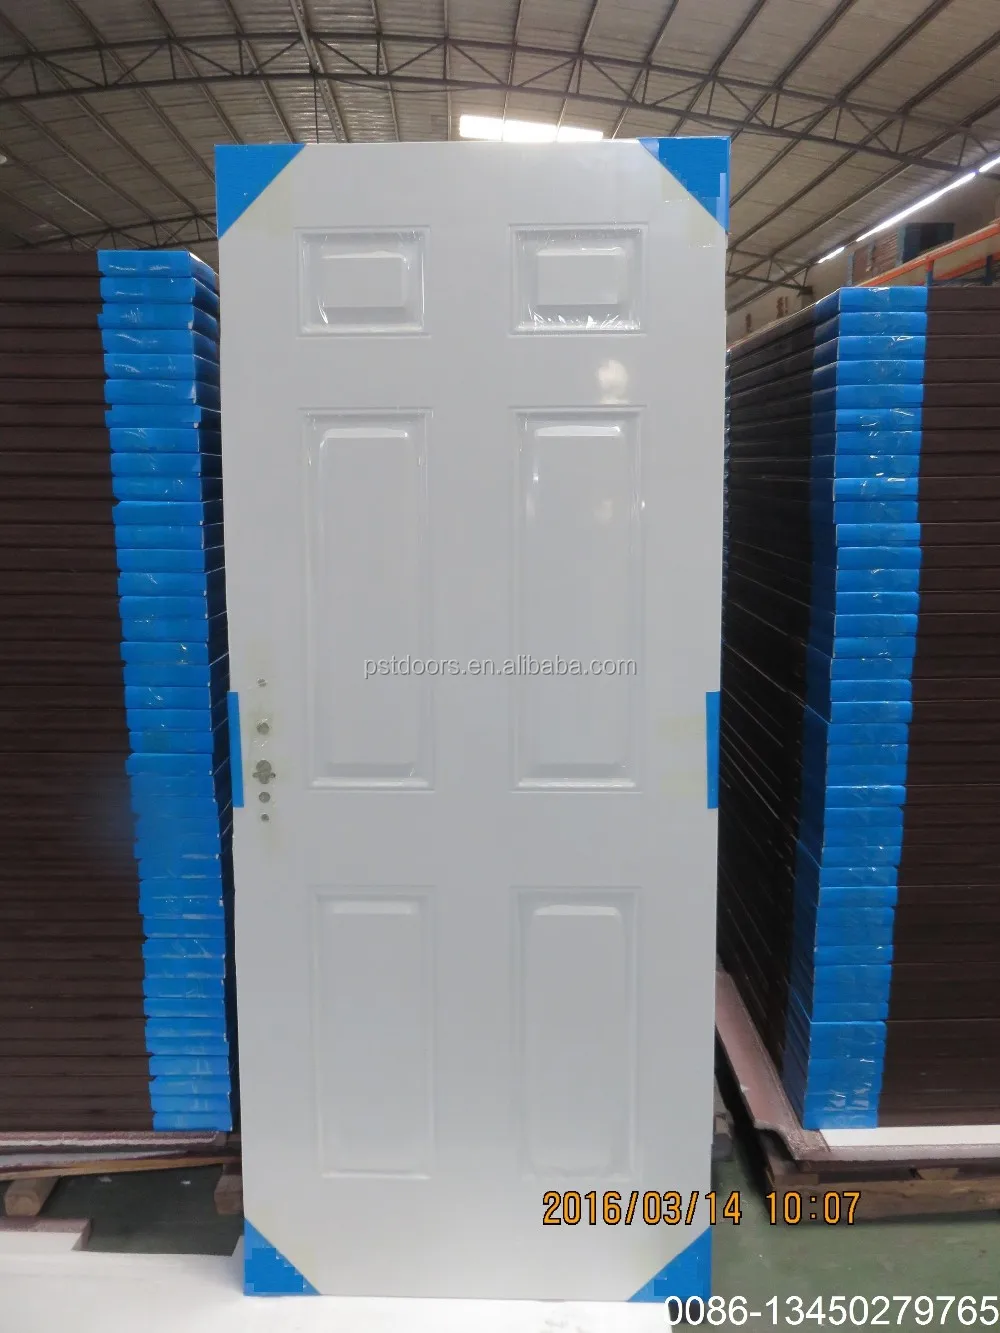 3 panel PVC laminated steel door with wooden edge